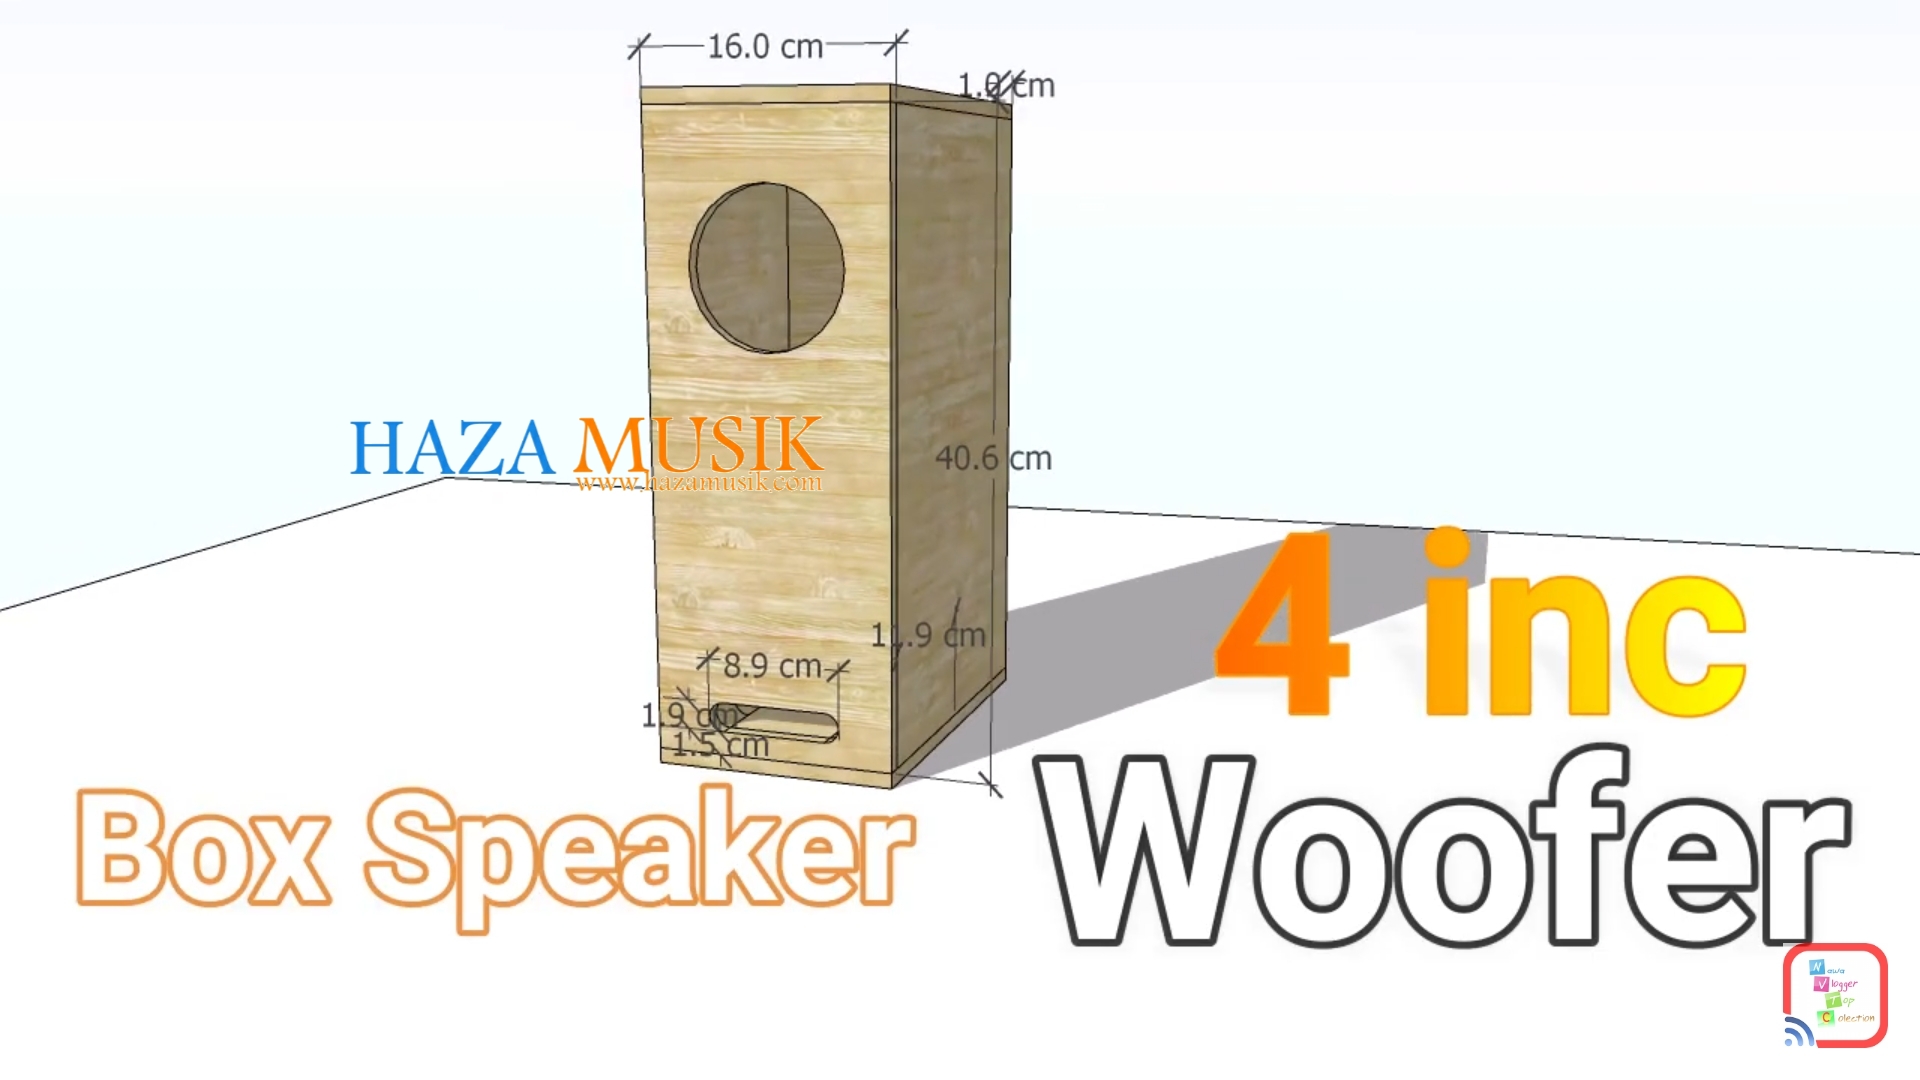 Box Speaker 4inch woofer rumahan - HAZA MUSIK